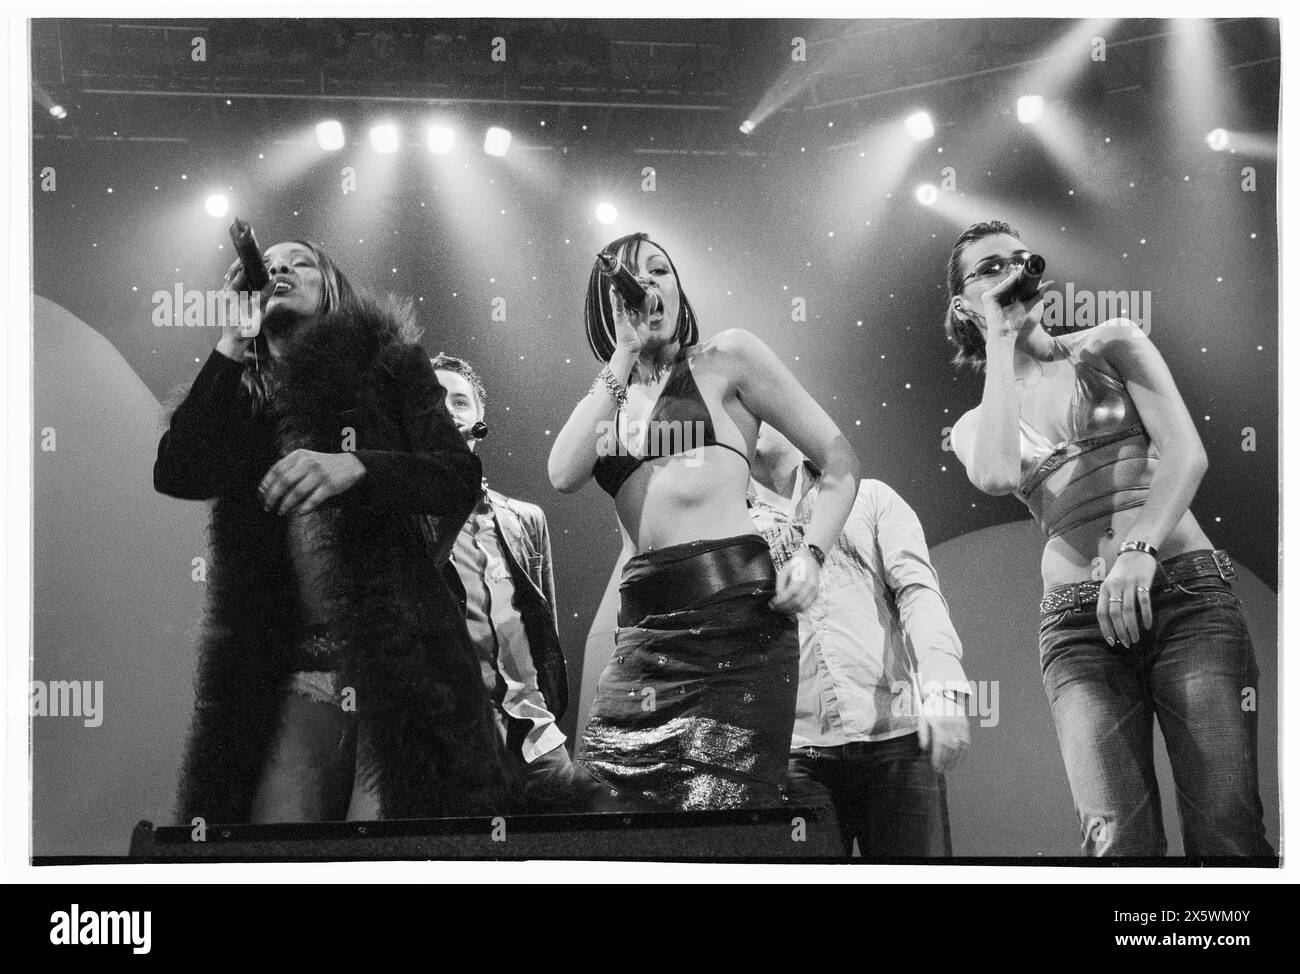 LIBERTY X, WHOLE BAND, CONCERT, 2001: Alle fünf Mitglieder von Liberty X traten live auf ihrer ersten UK Tour mit der Smash Hits Tour in der Cardiff International Arena, CIA, Cardiff, Wales, UK am 4. Dezember 2001 auf. Foto: Rob Watkins. INFO: Liberty X, eine britisch-irische Popgruppe, die 2001 in der Fernsehsendung Popstars gegründet wurde, erzielte Erfolge mit Hits wie „Just a Little“ und „Thinking IT Over“. Ihre energiegeladenen Auftritte und eingängigen Melodien machten sie zu einem Grundpfeiler der Popszene der frühen 2000er Jahre. Stockfoto